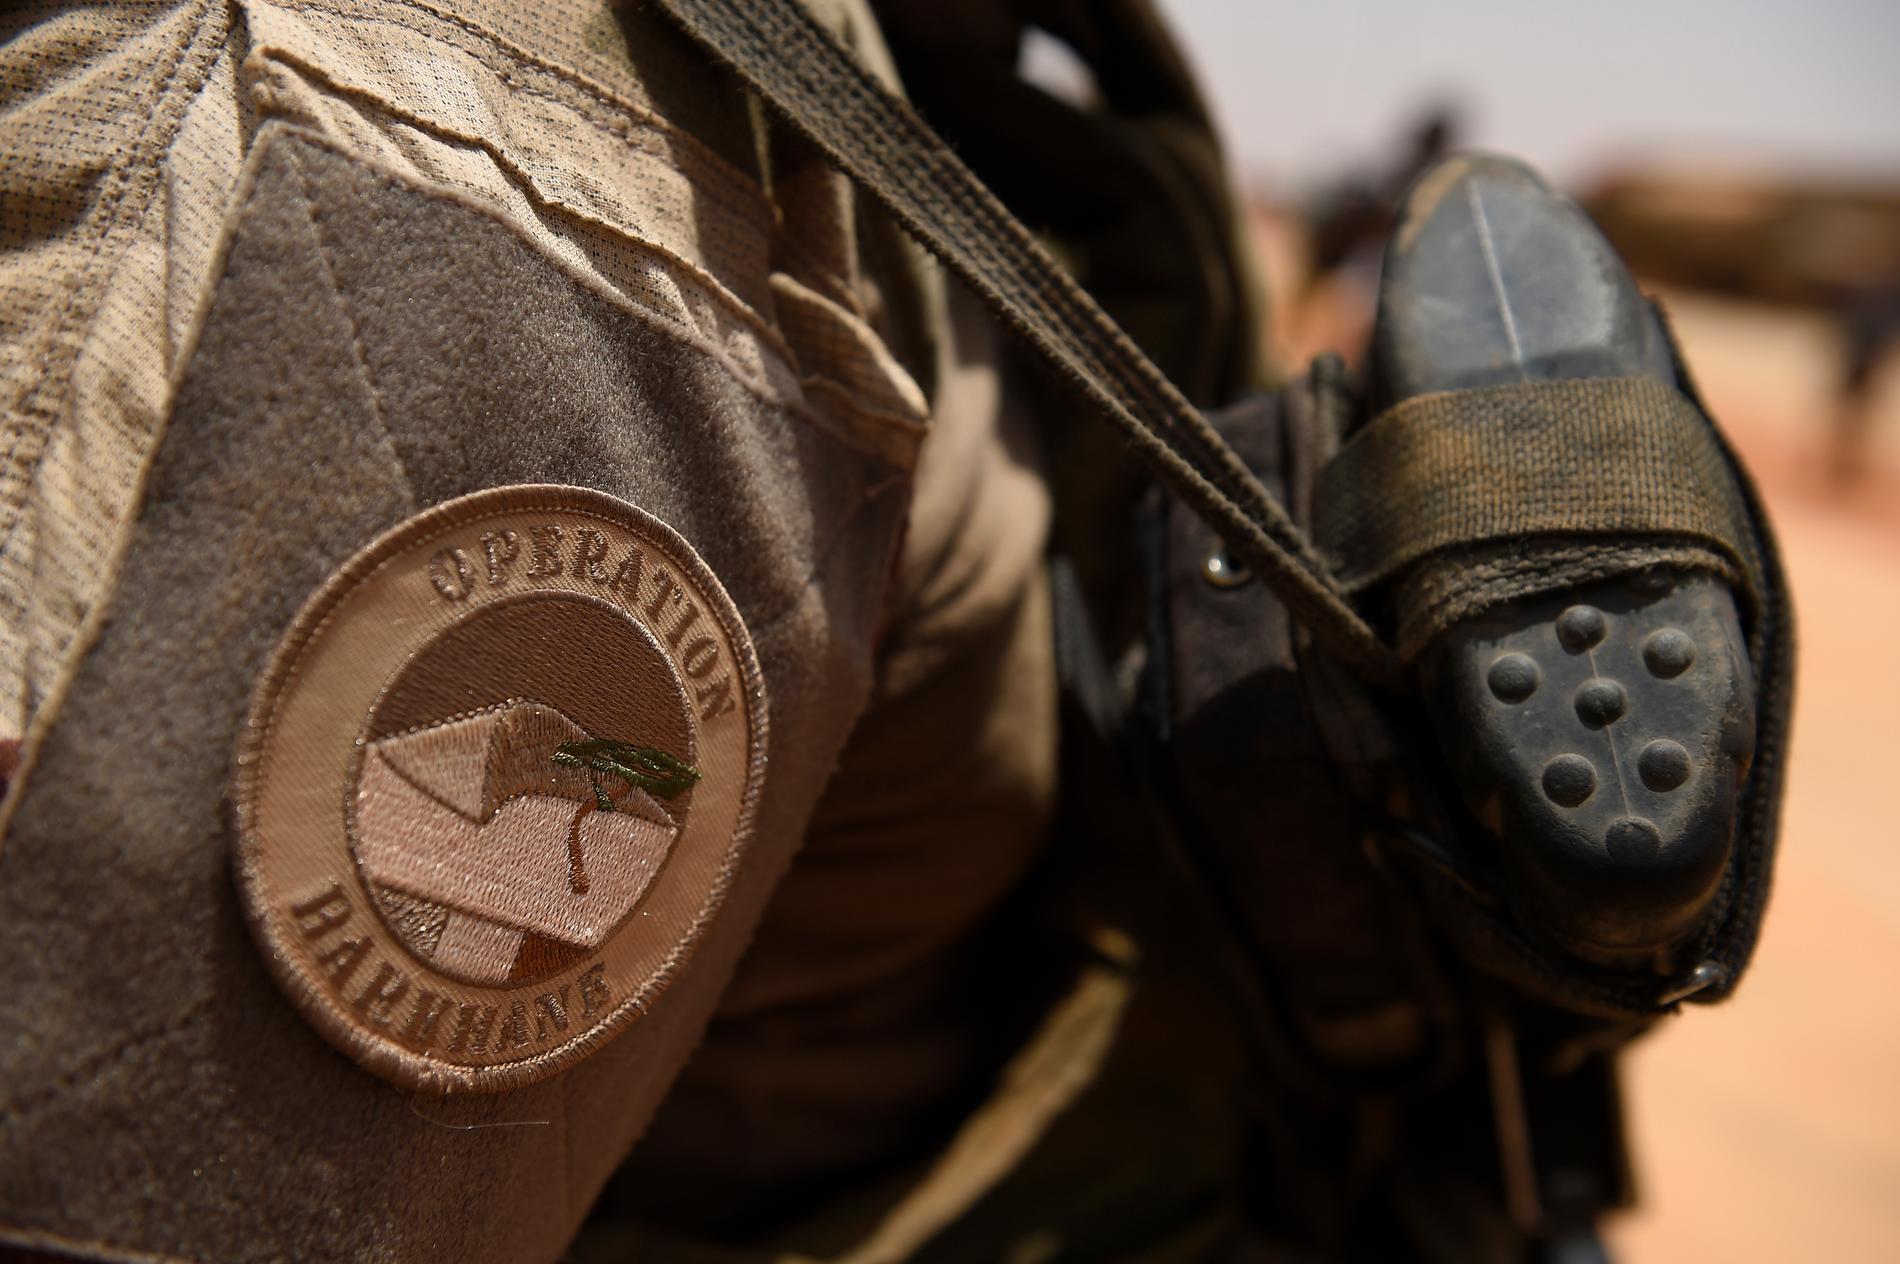 Regeringen har beslutat att Sverige ska delta i insatsen Task Torce Takuba i Mali. Insatsen ska inkluderas i och ledas av befälhavaren för den franska Operation Barkhane, som är inriktade på att bekämpa terrorgrupper i området. Arkivbild.